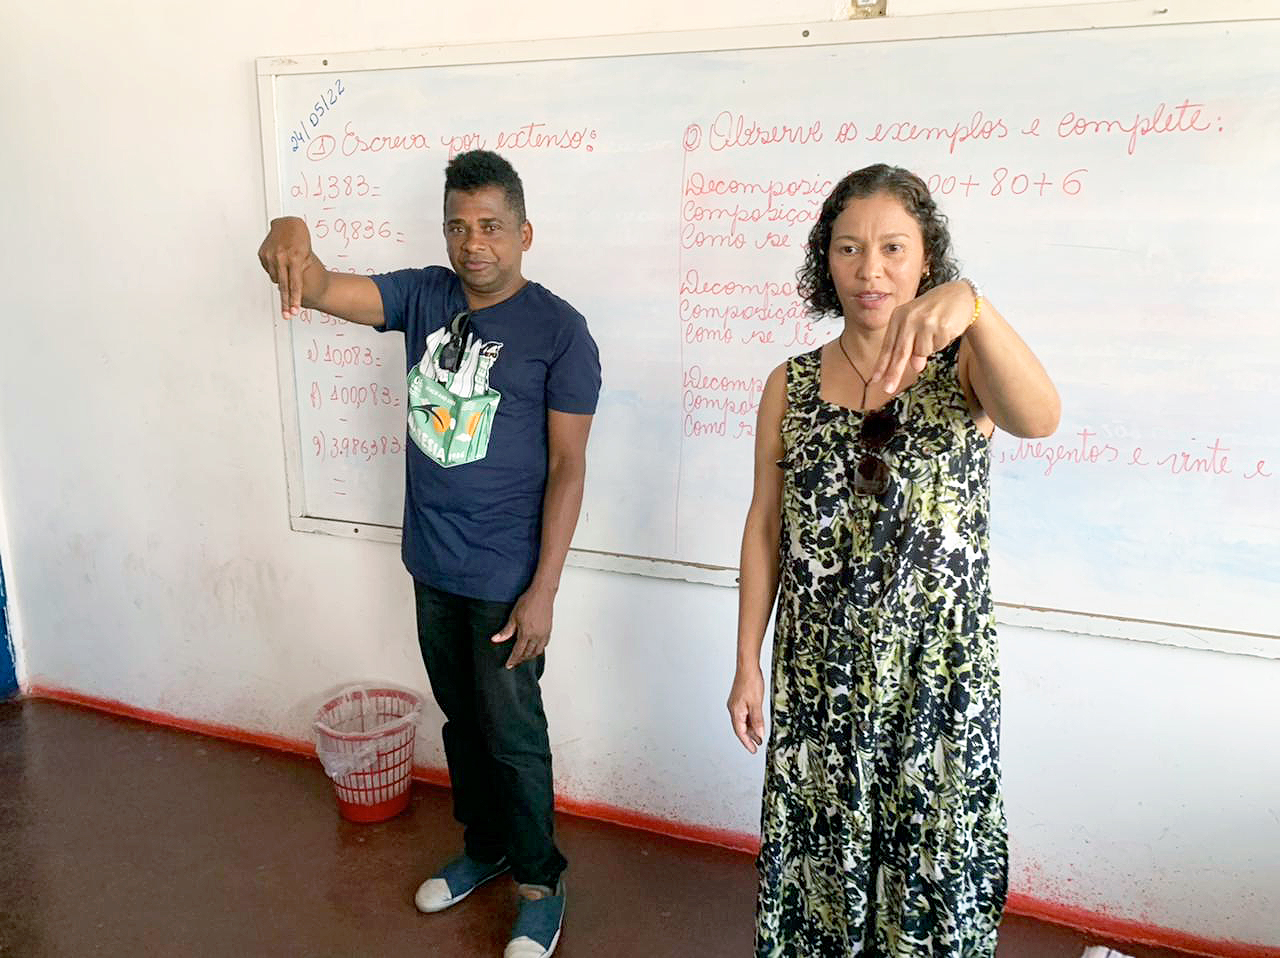 Professor e intrprete, ensinam alunos surdos e capacitar professores em Libras. (Foto: Divulgao)